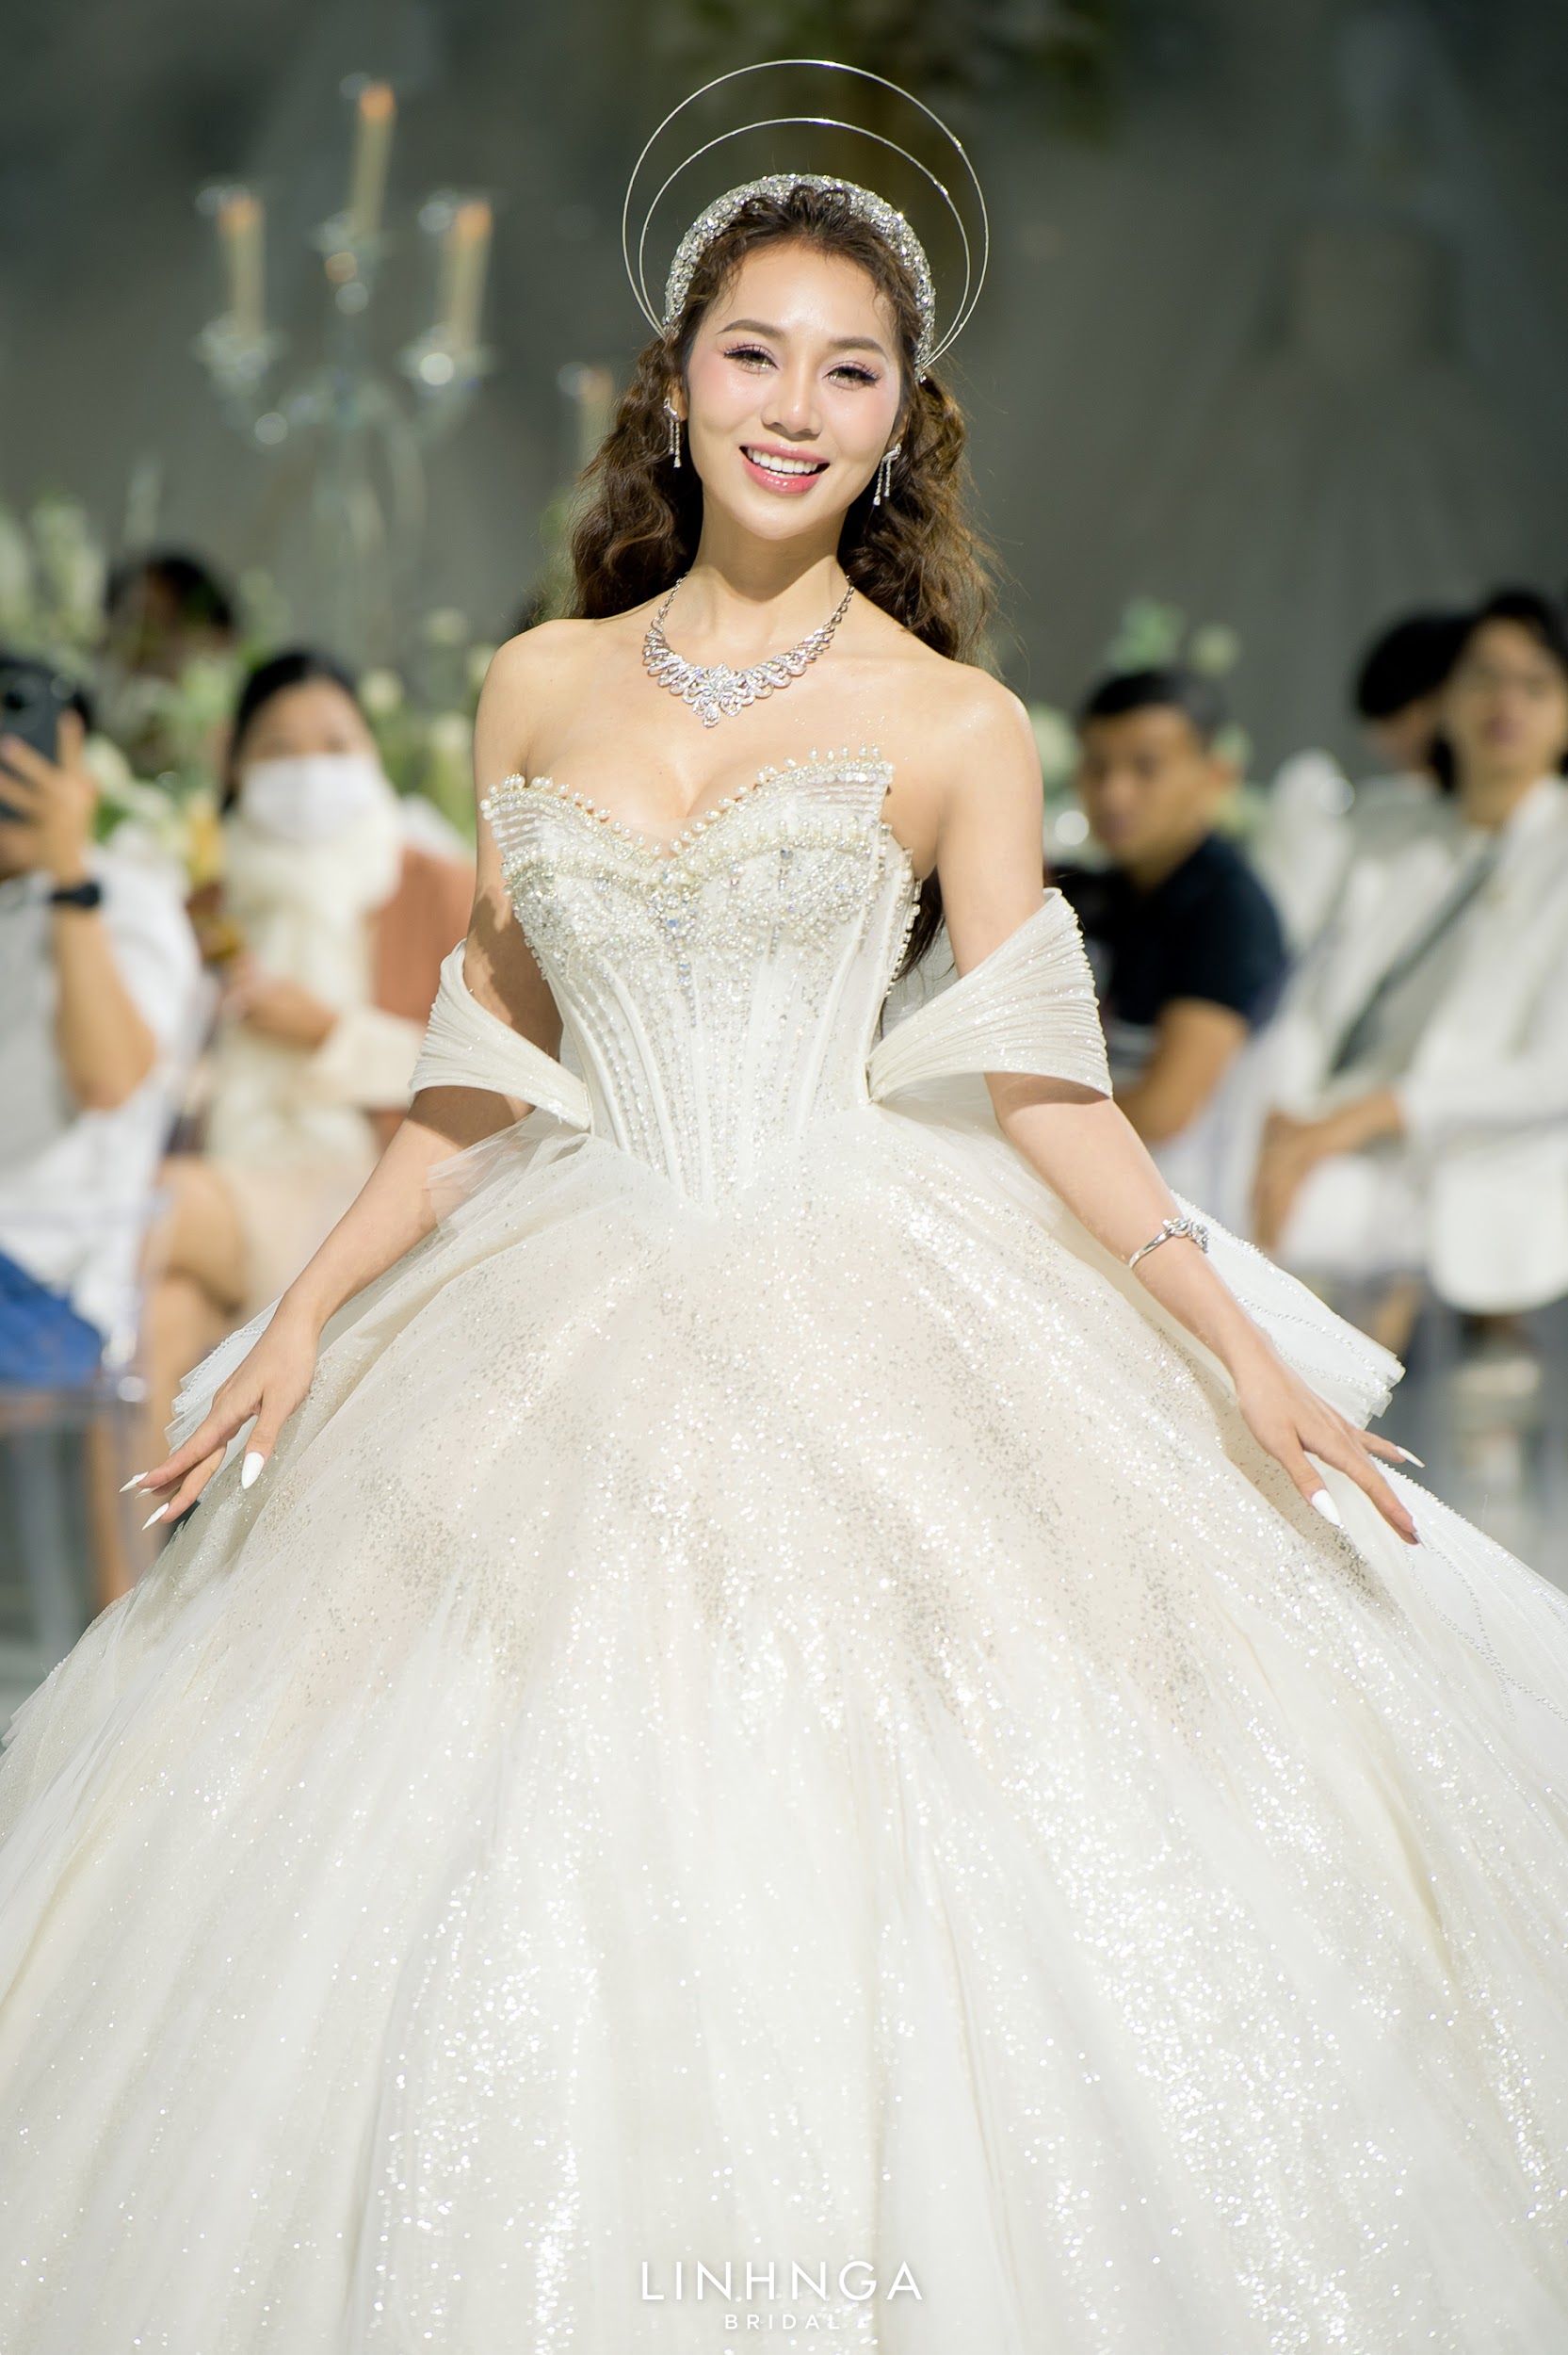 Hậu sinh nhật, Á hậu Thảo Nhi Lê hoá nữ hoàng lộng lẫy trở thành First Face cho show diễn thời trang cưới - ảnh 5